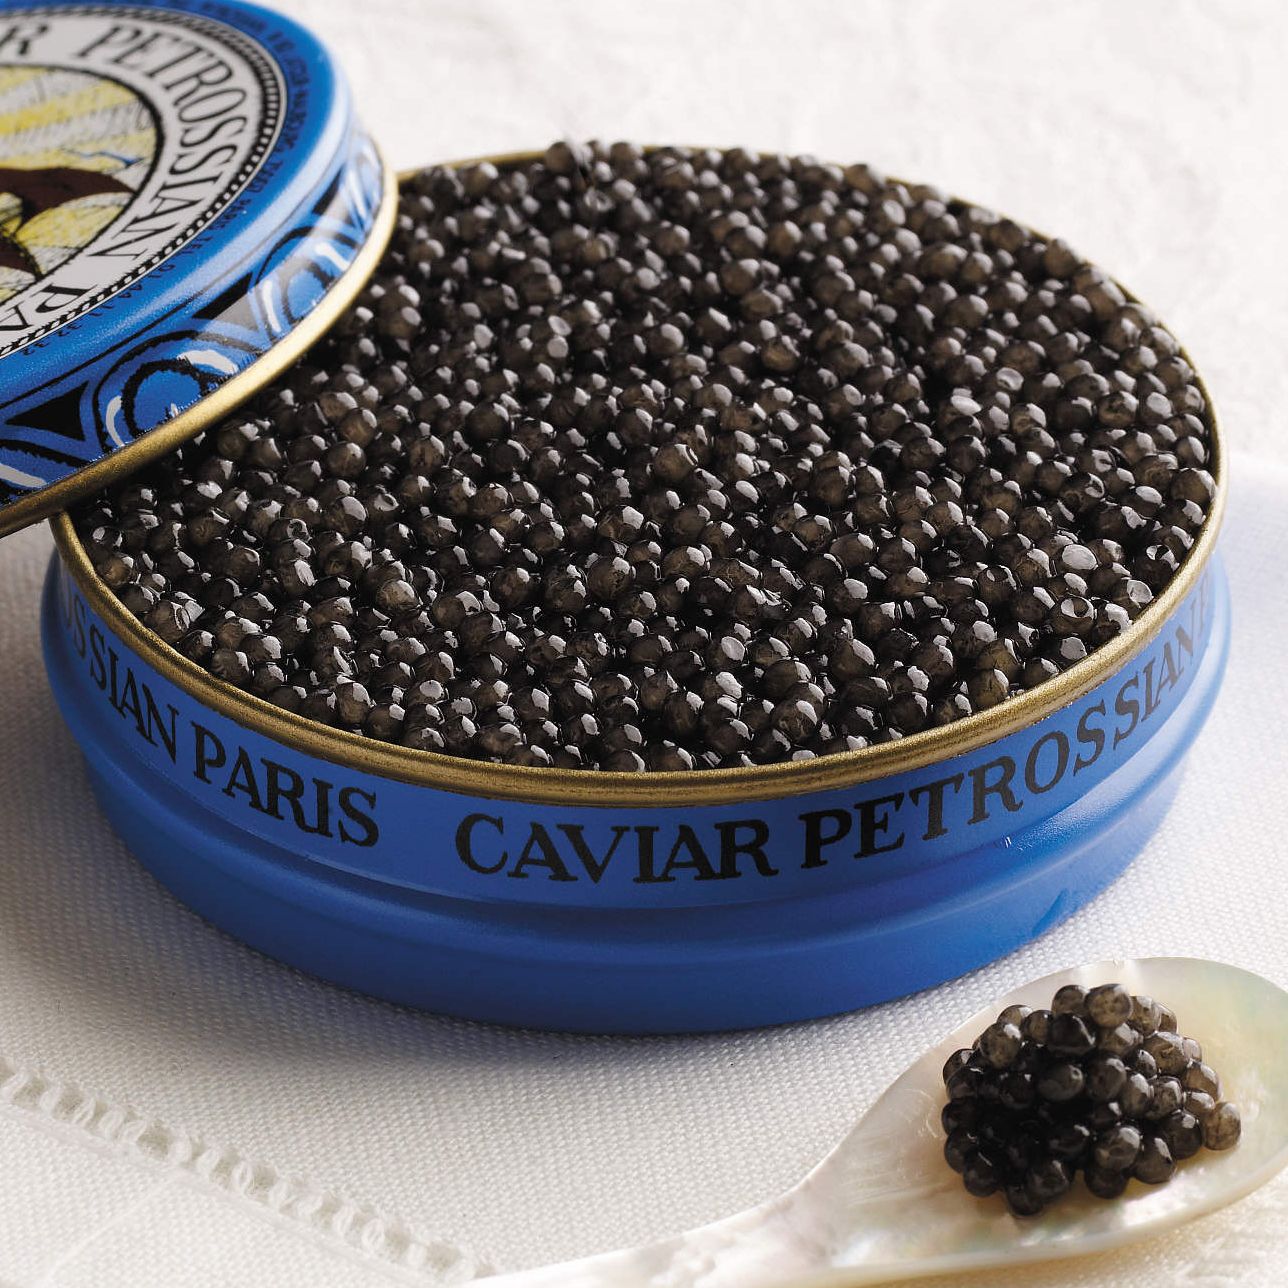 https://www.stephsgourmetfoods.com.au/cdn/shop/files/151124140233-1-caviar-petrossian.jpg?v=1683760048